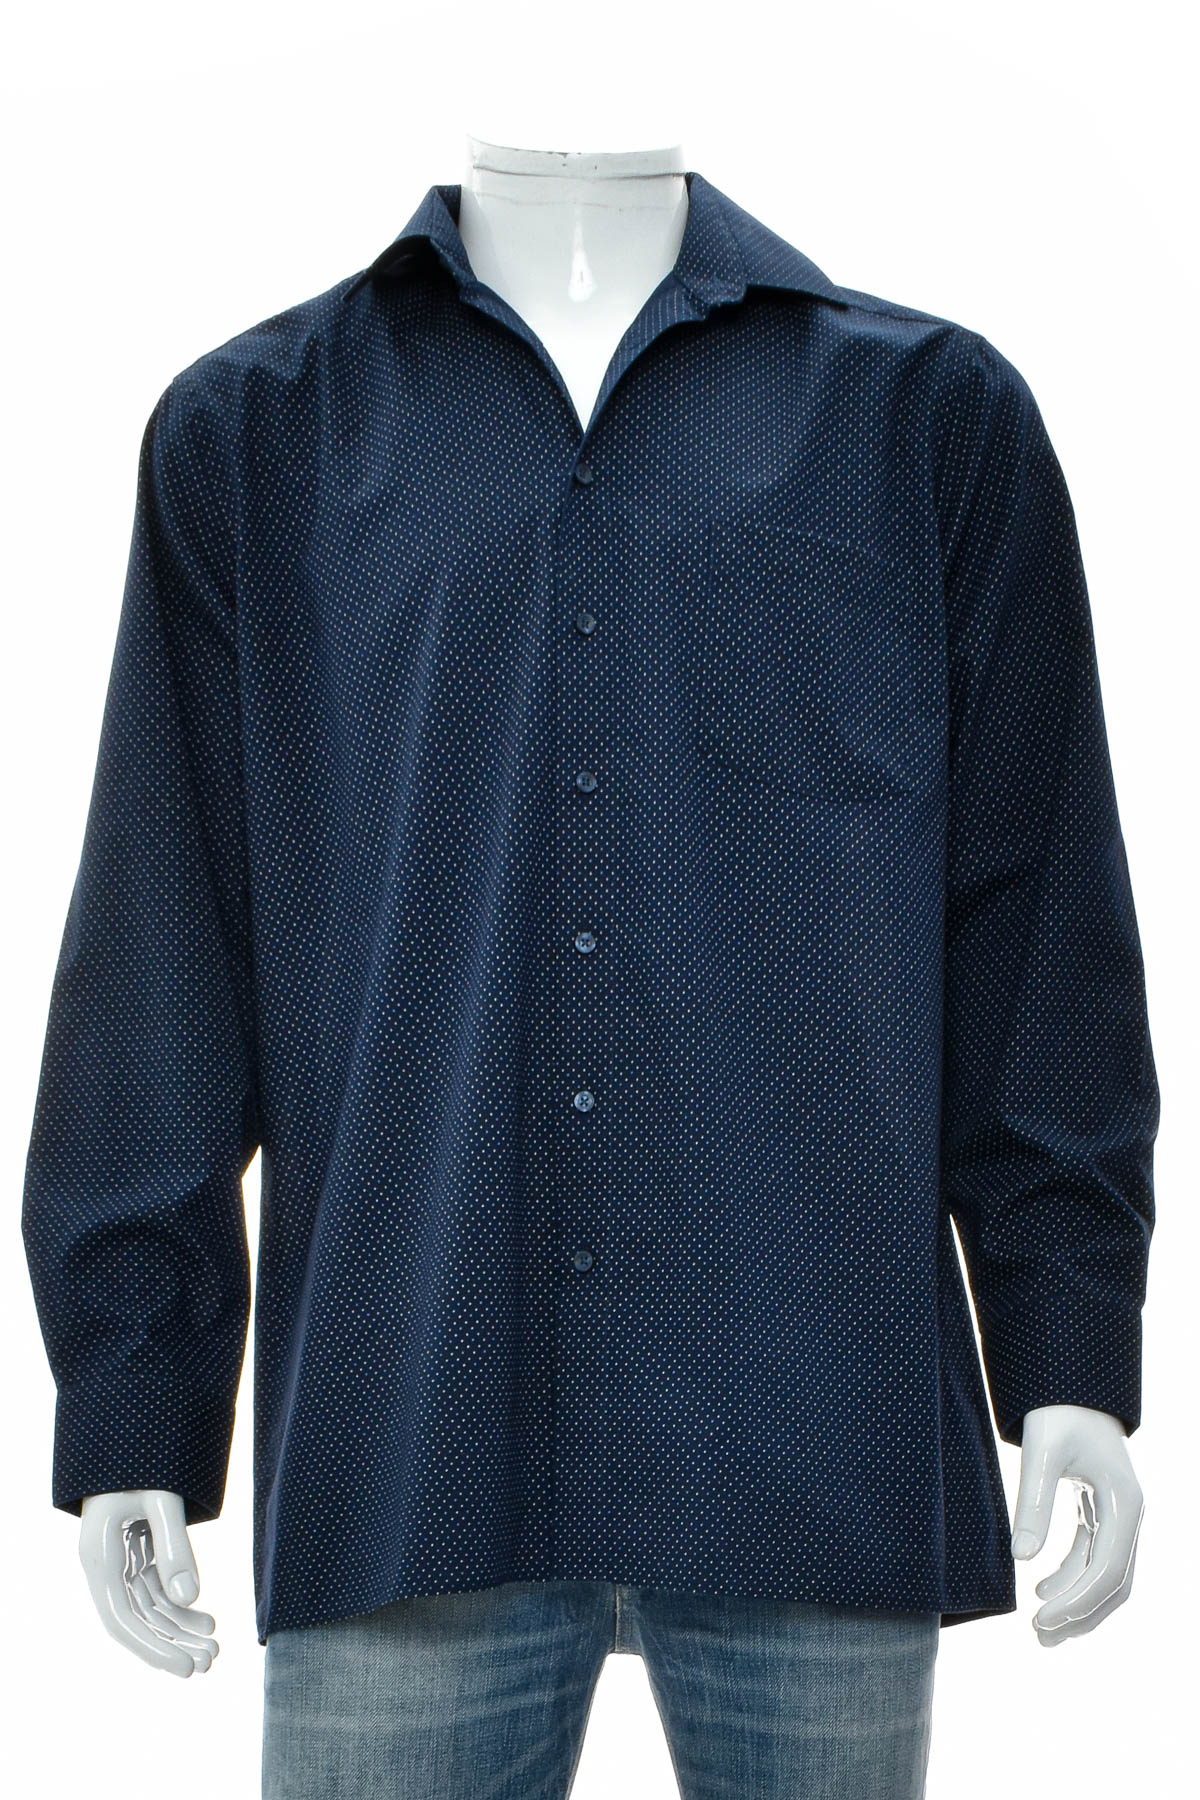 Ανδρικό πουκάμισο - Royal Class - 0